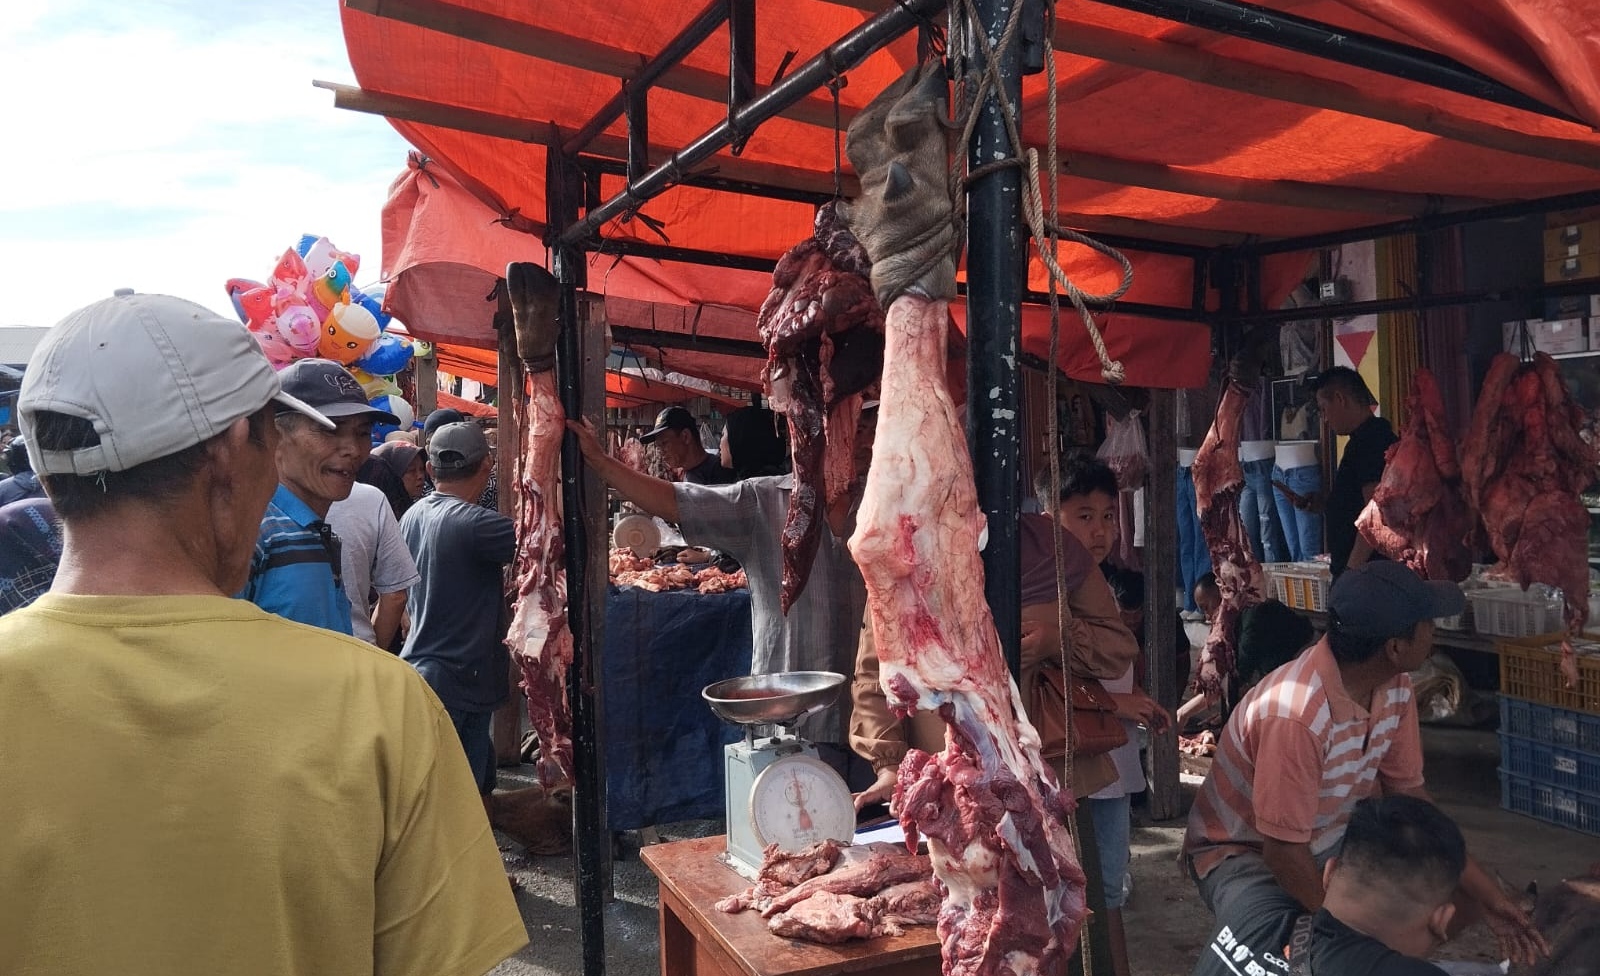 Harga Daging Sapi di Pasar Kota Agung Tanggamus Lampung Tembus Rp 160 Ribu per Kilogram